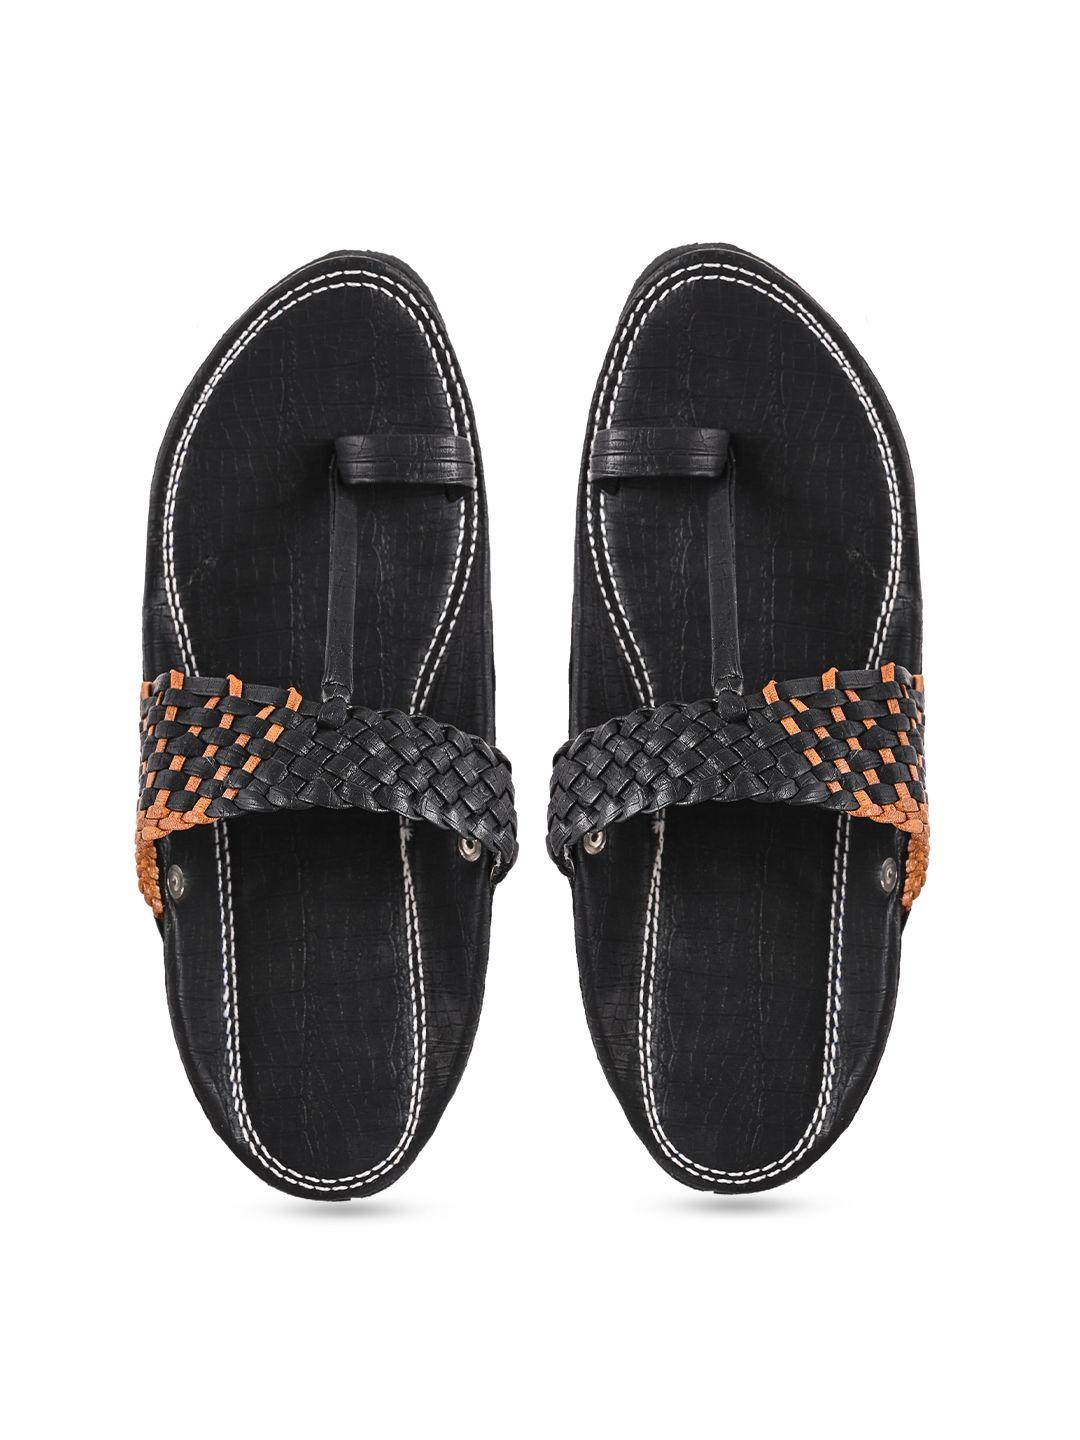 aristitch men black ethnic comfort sandals